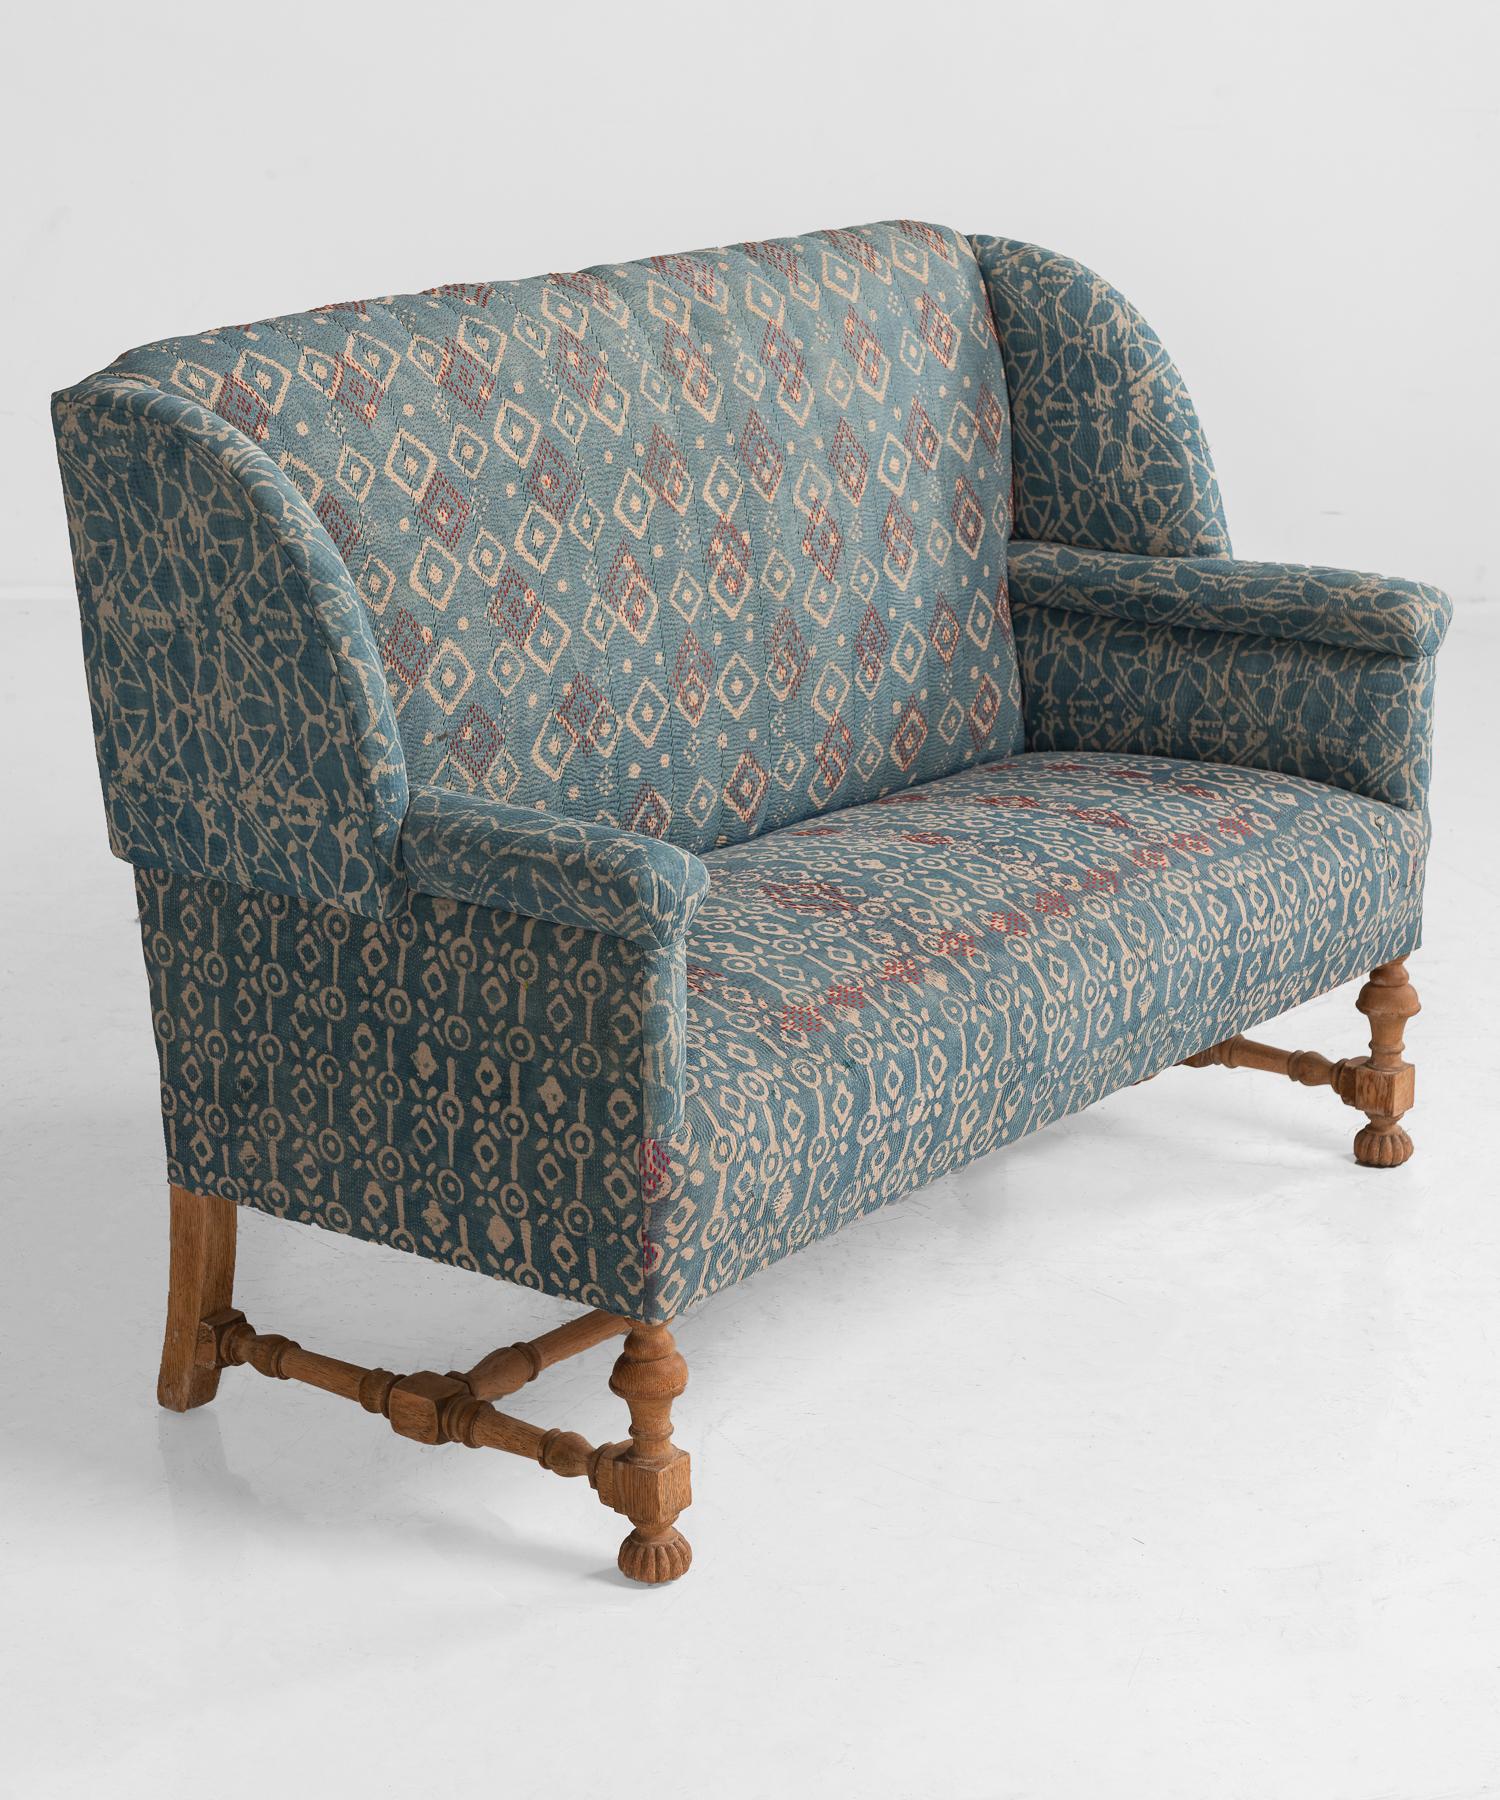 Indigo Quilt Sofa, England, circa 1930 (Arts and Crafts)